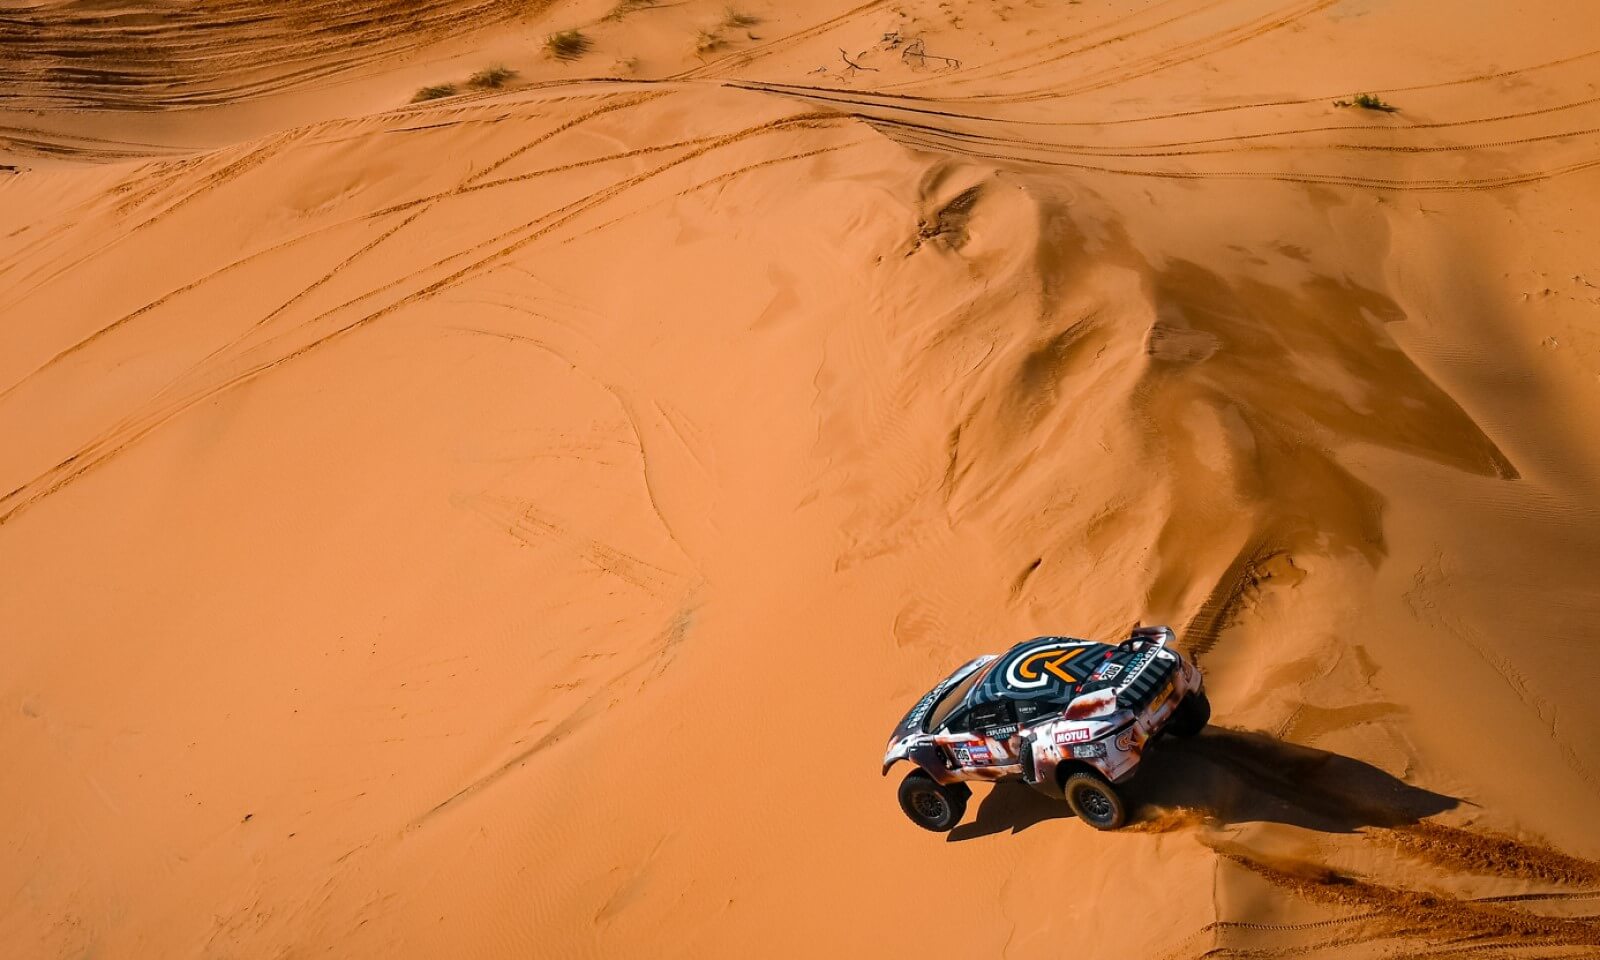 Guerlain Chicherit was placed third on 2023 Dakar stage 7